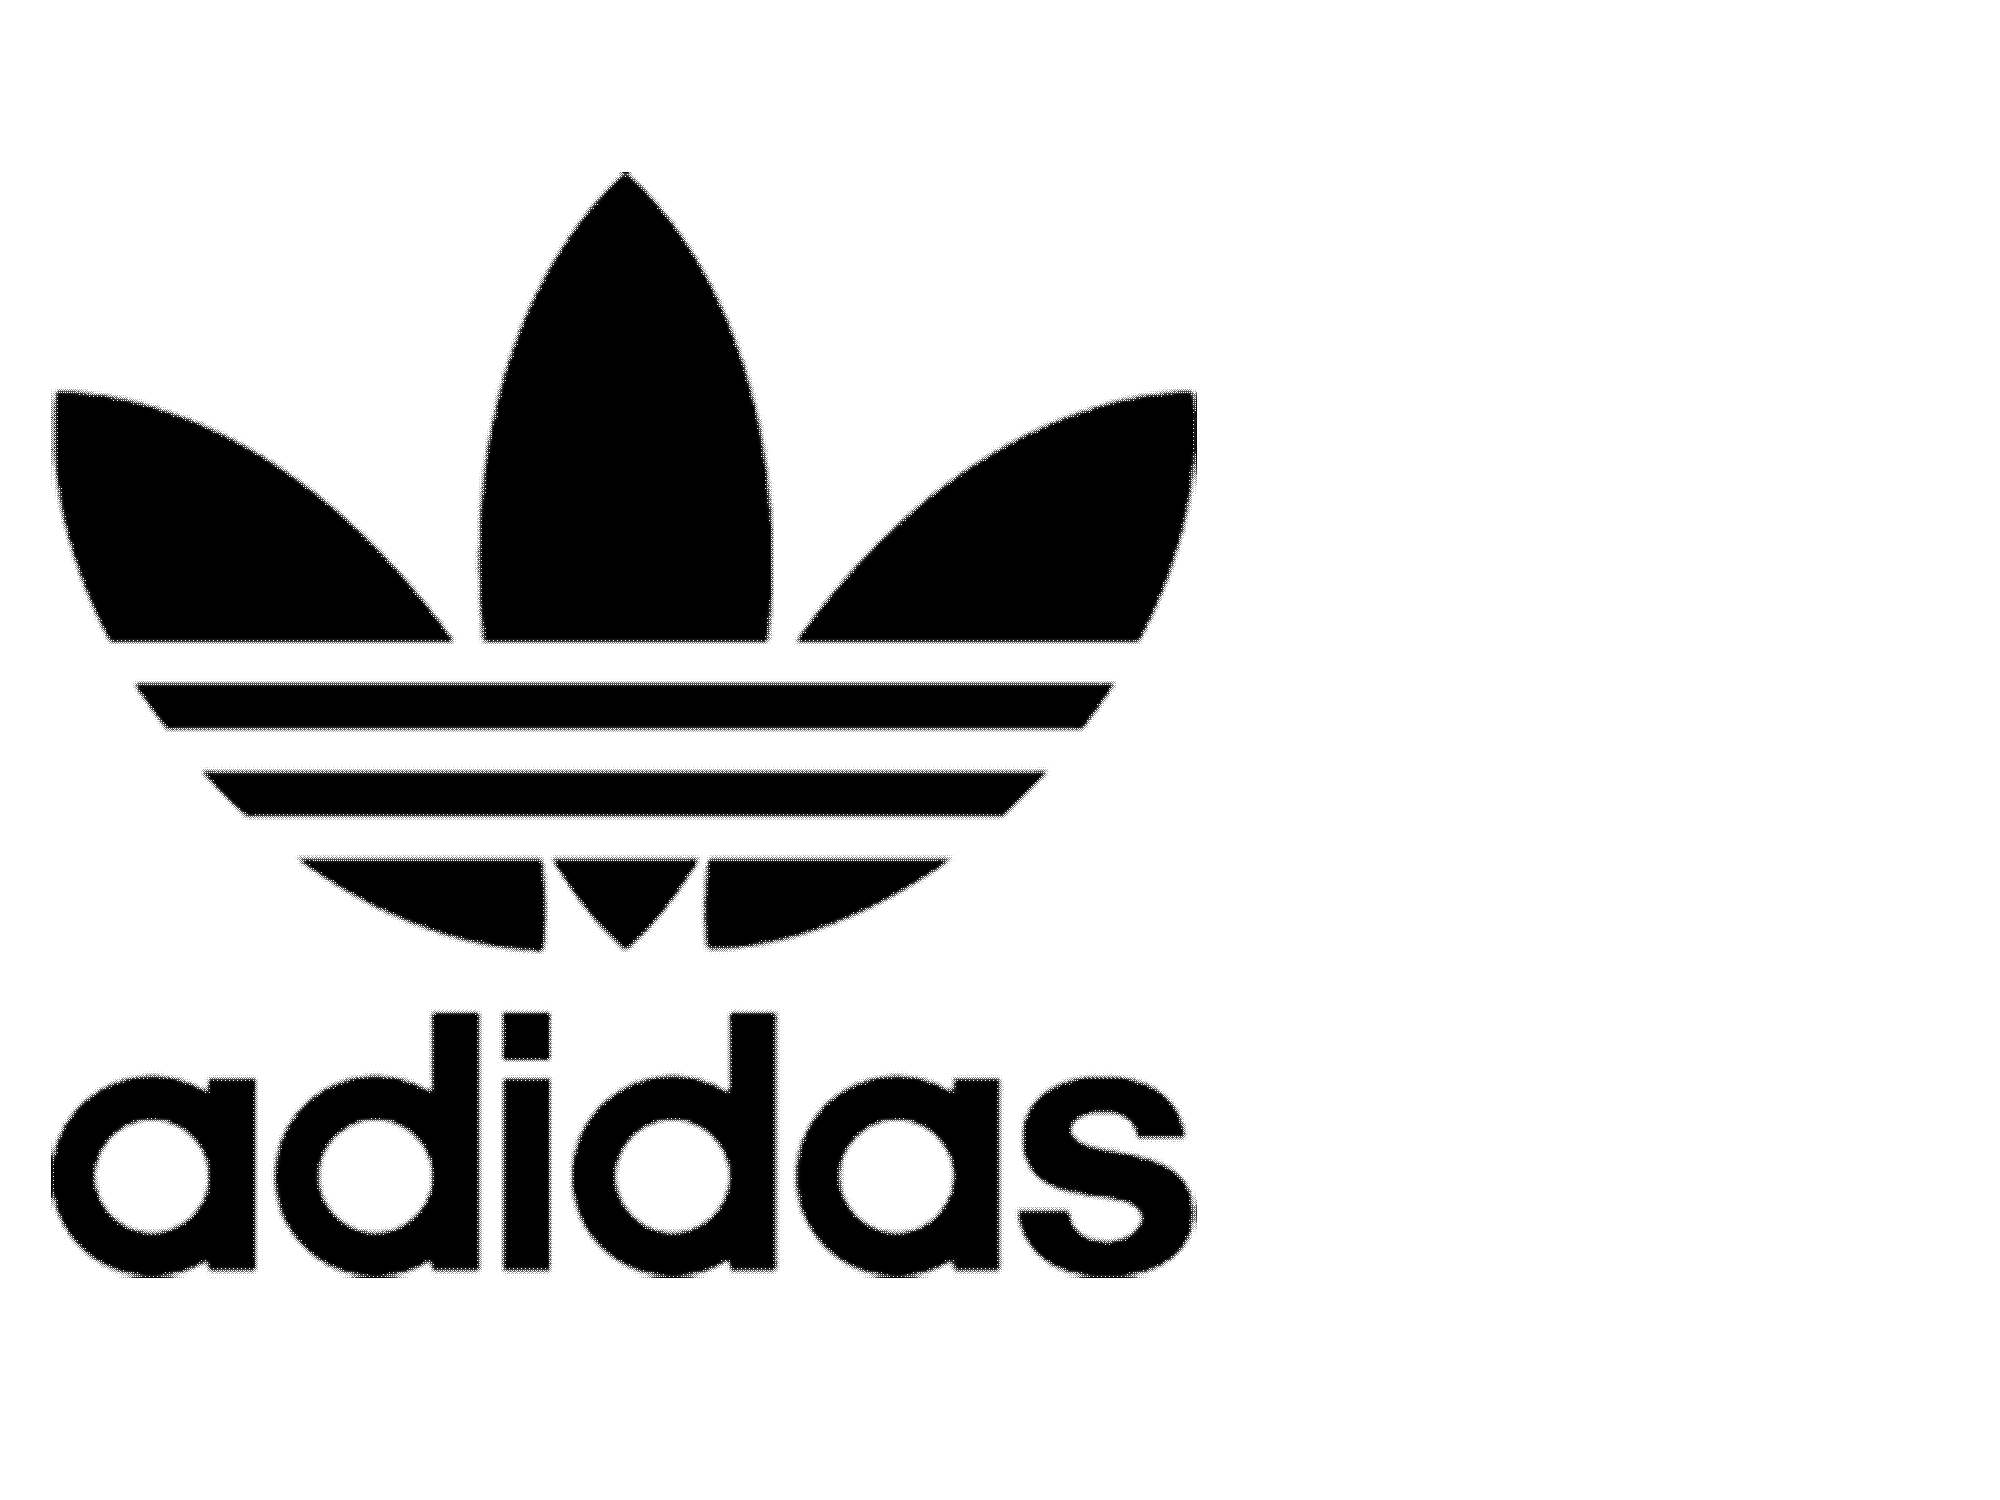 adidas originals logo png white